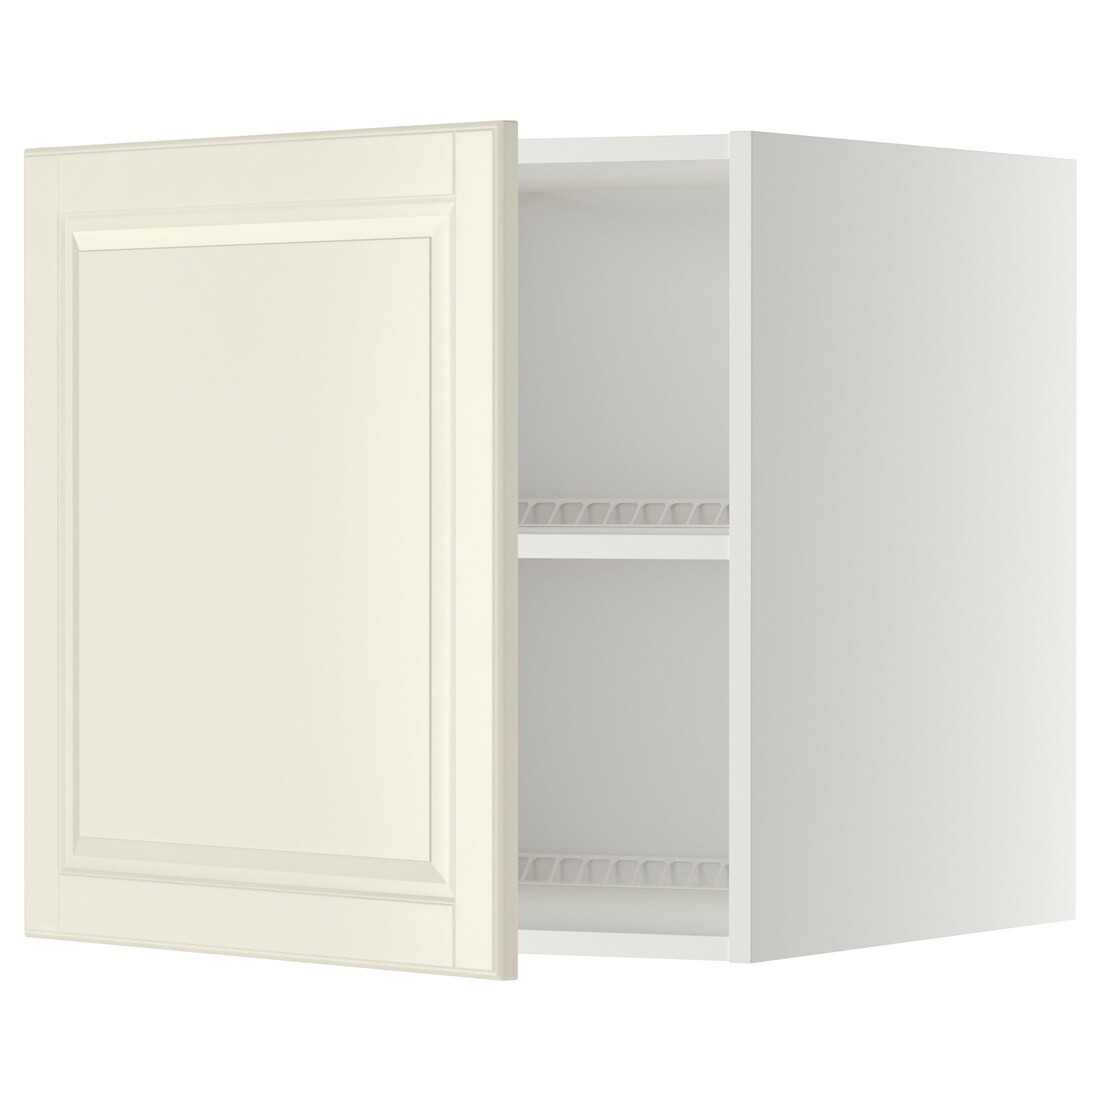 METOD МЕТОД Верхний шкаф для холодильника / морозильника, белый / Bodbyn кремовый, 60x60 см